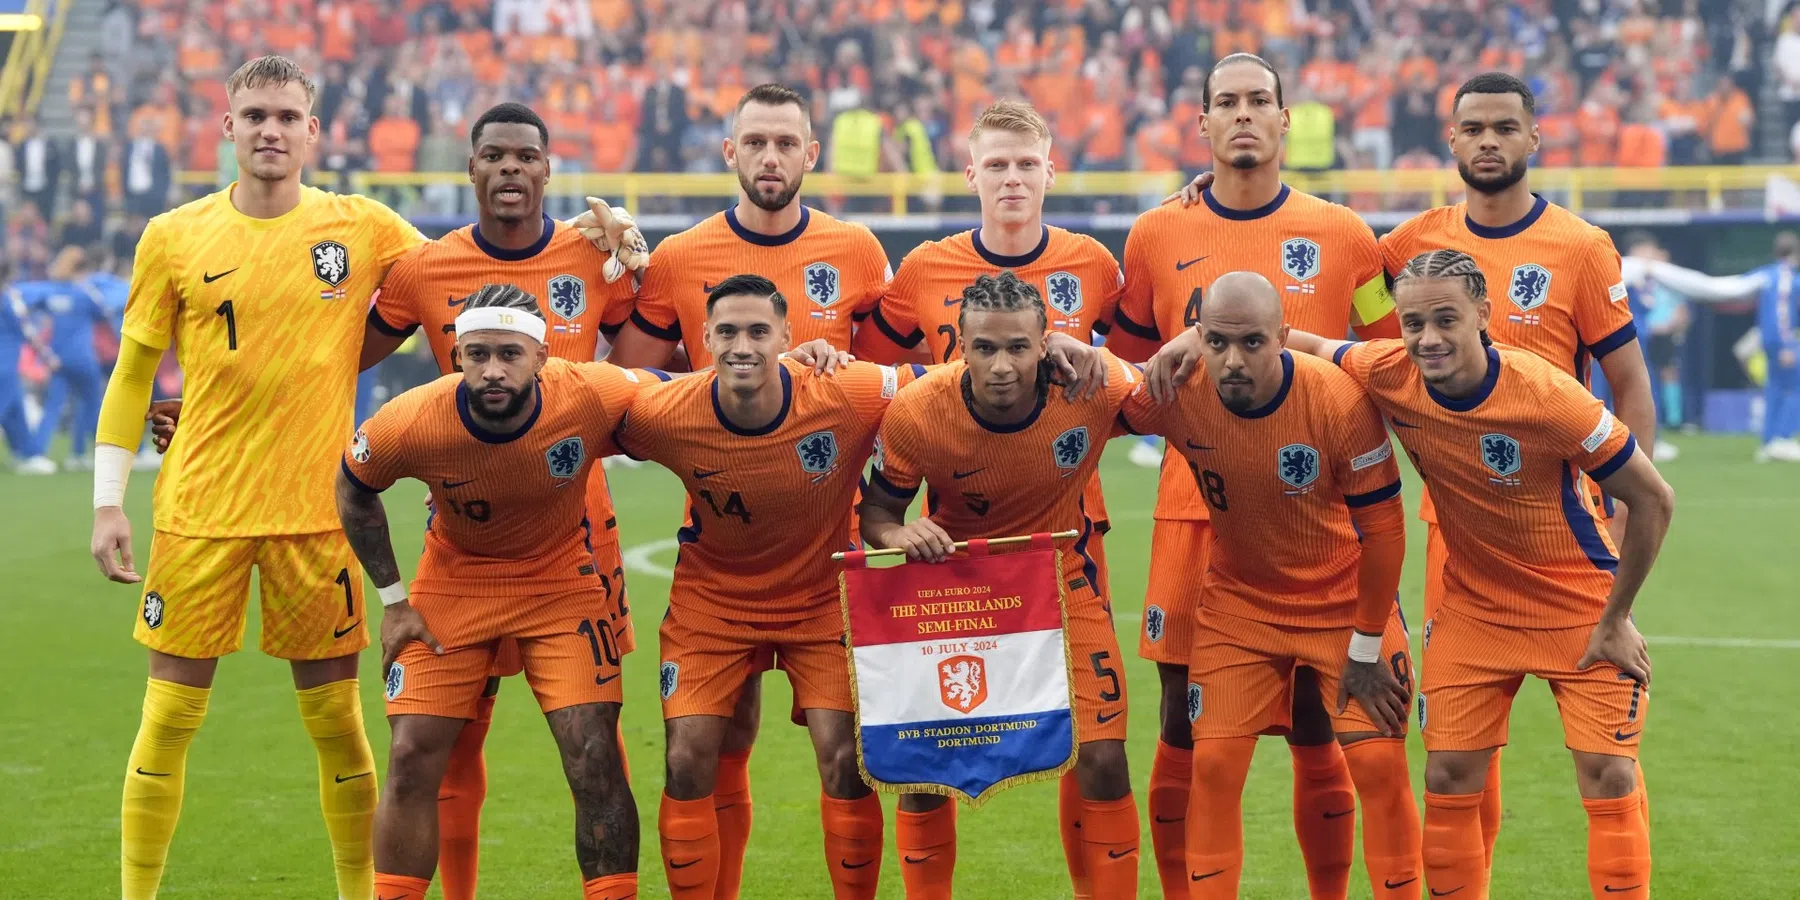 Speelschema Oranje: wanneer komt het Nederlands Elftal in actie?